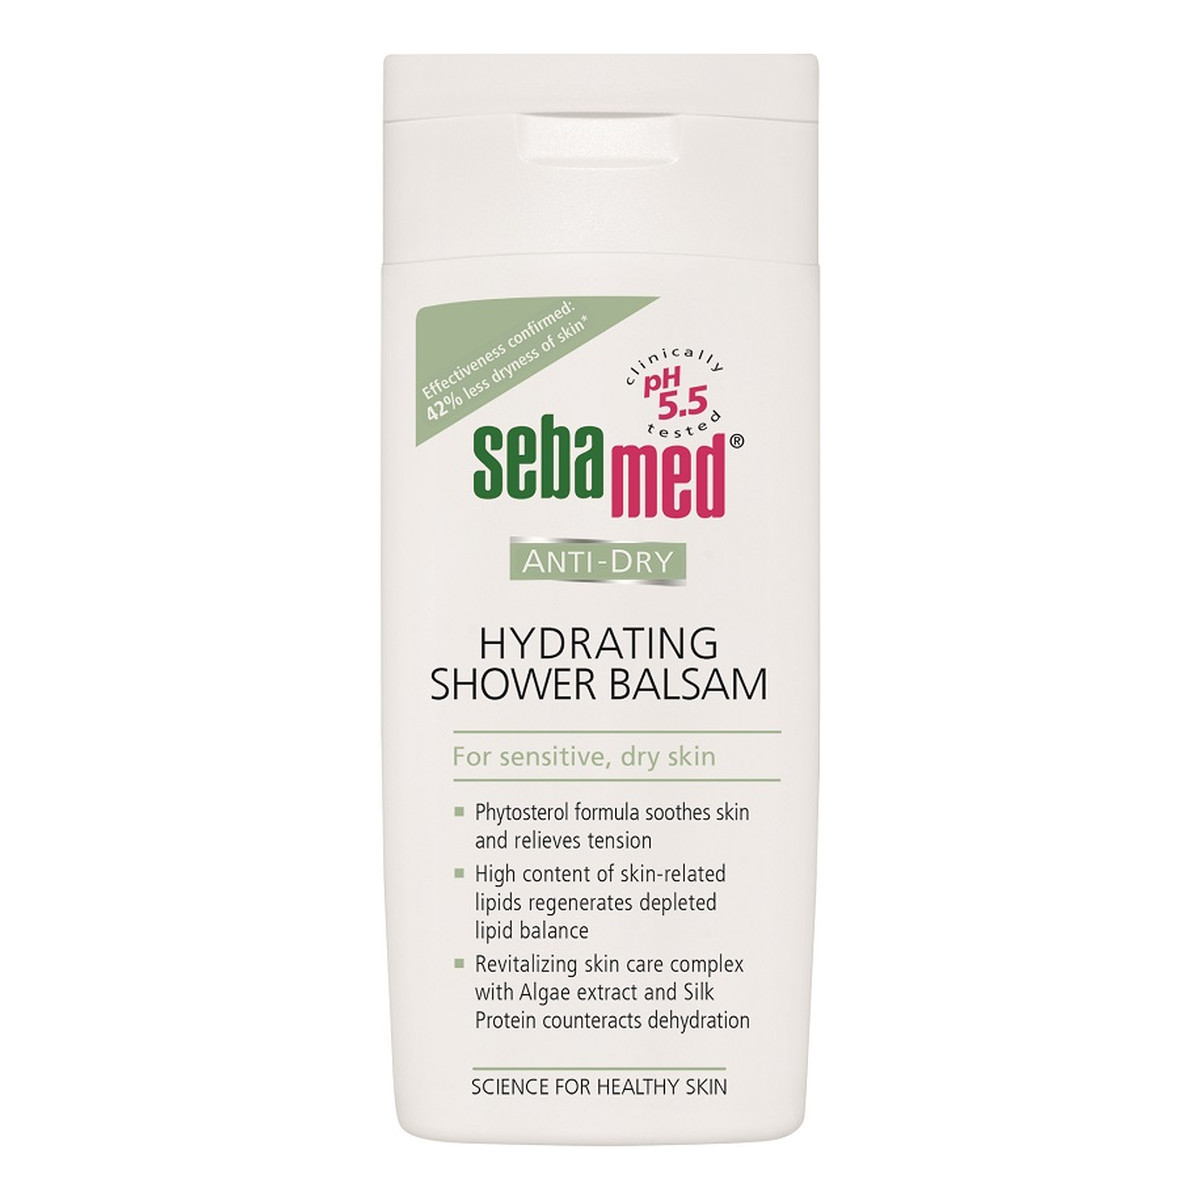 Sebamed Anti-Dry Hydrating nawilżający balsam pod prysznic 200ml